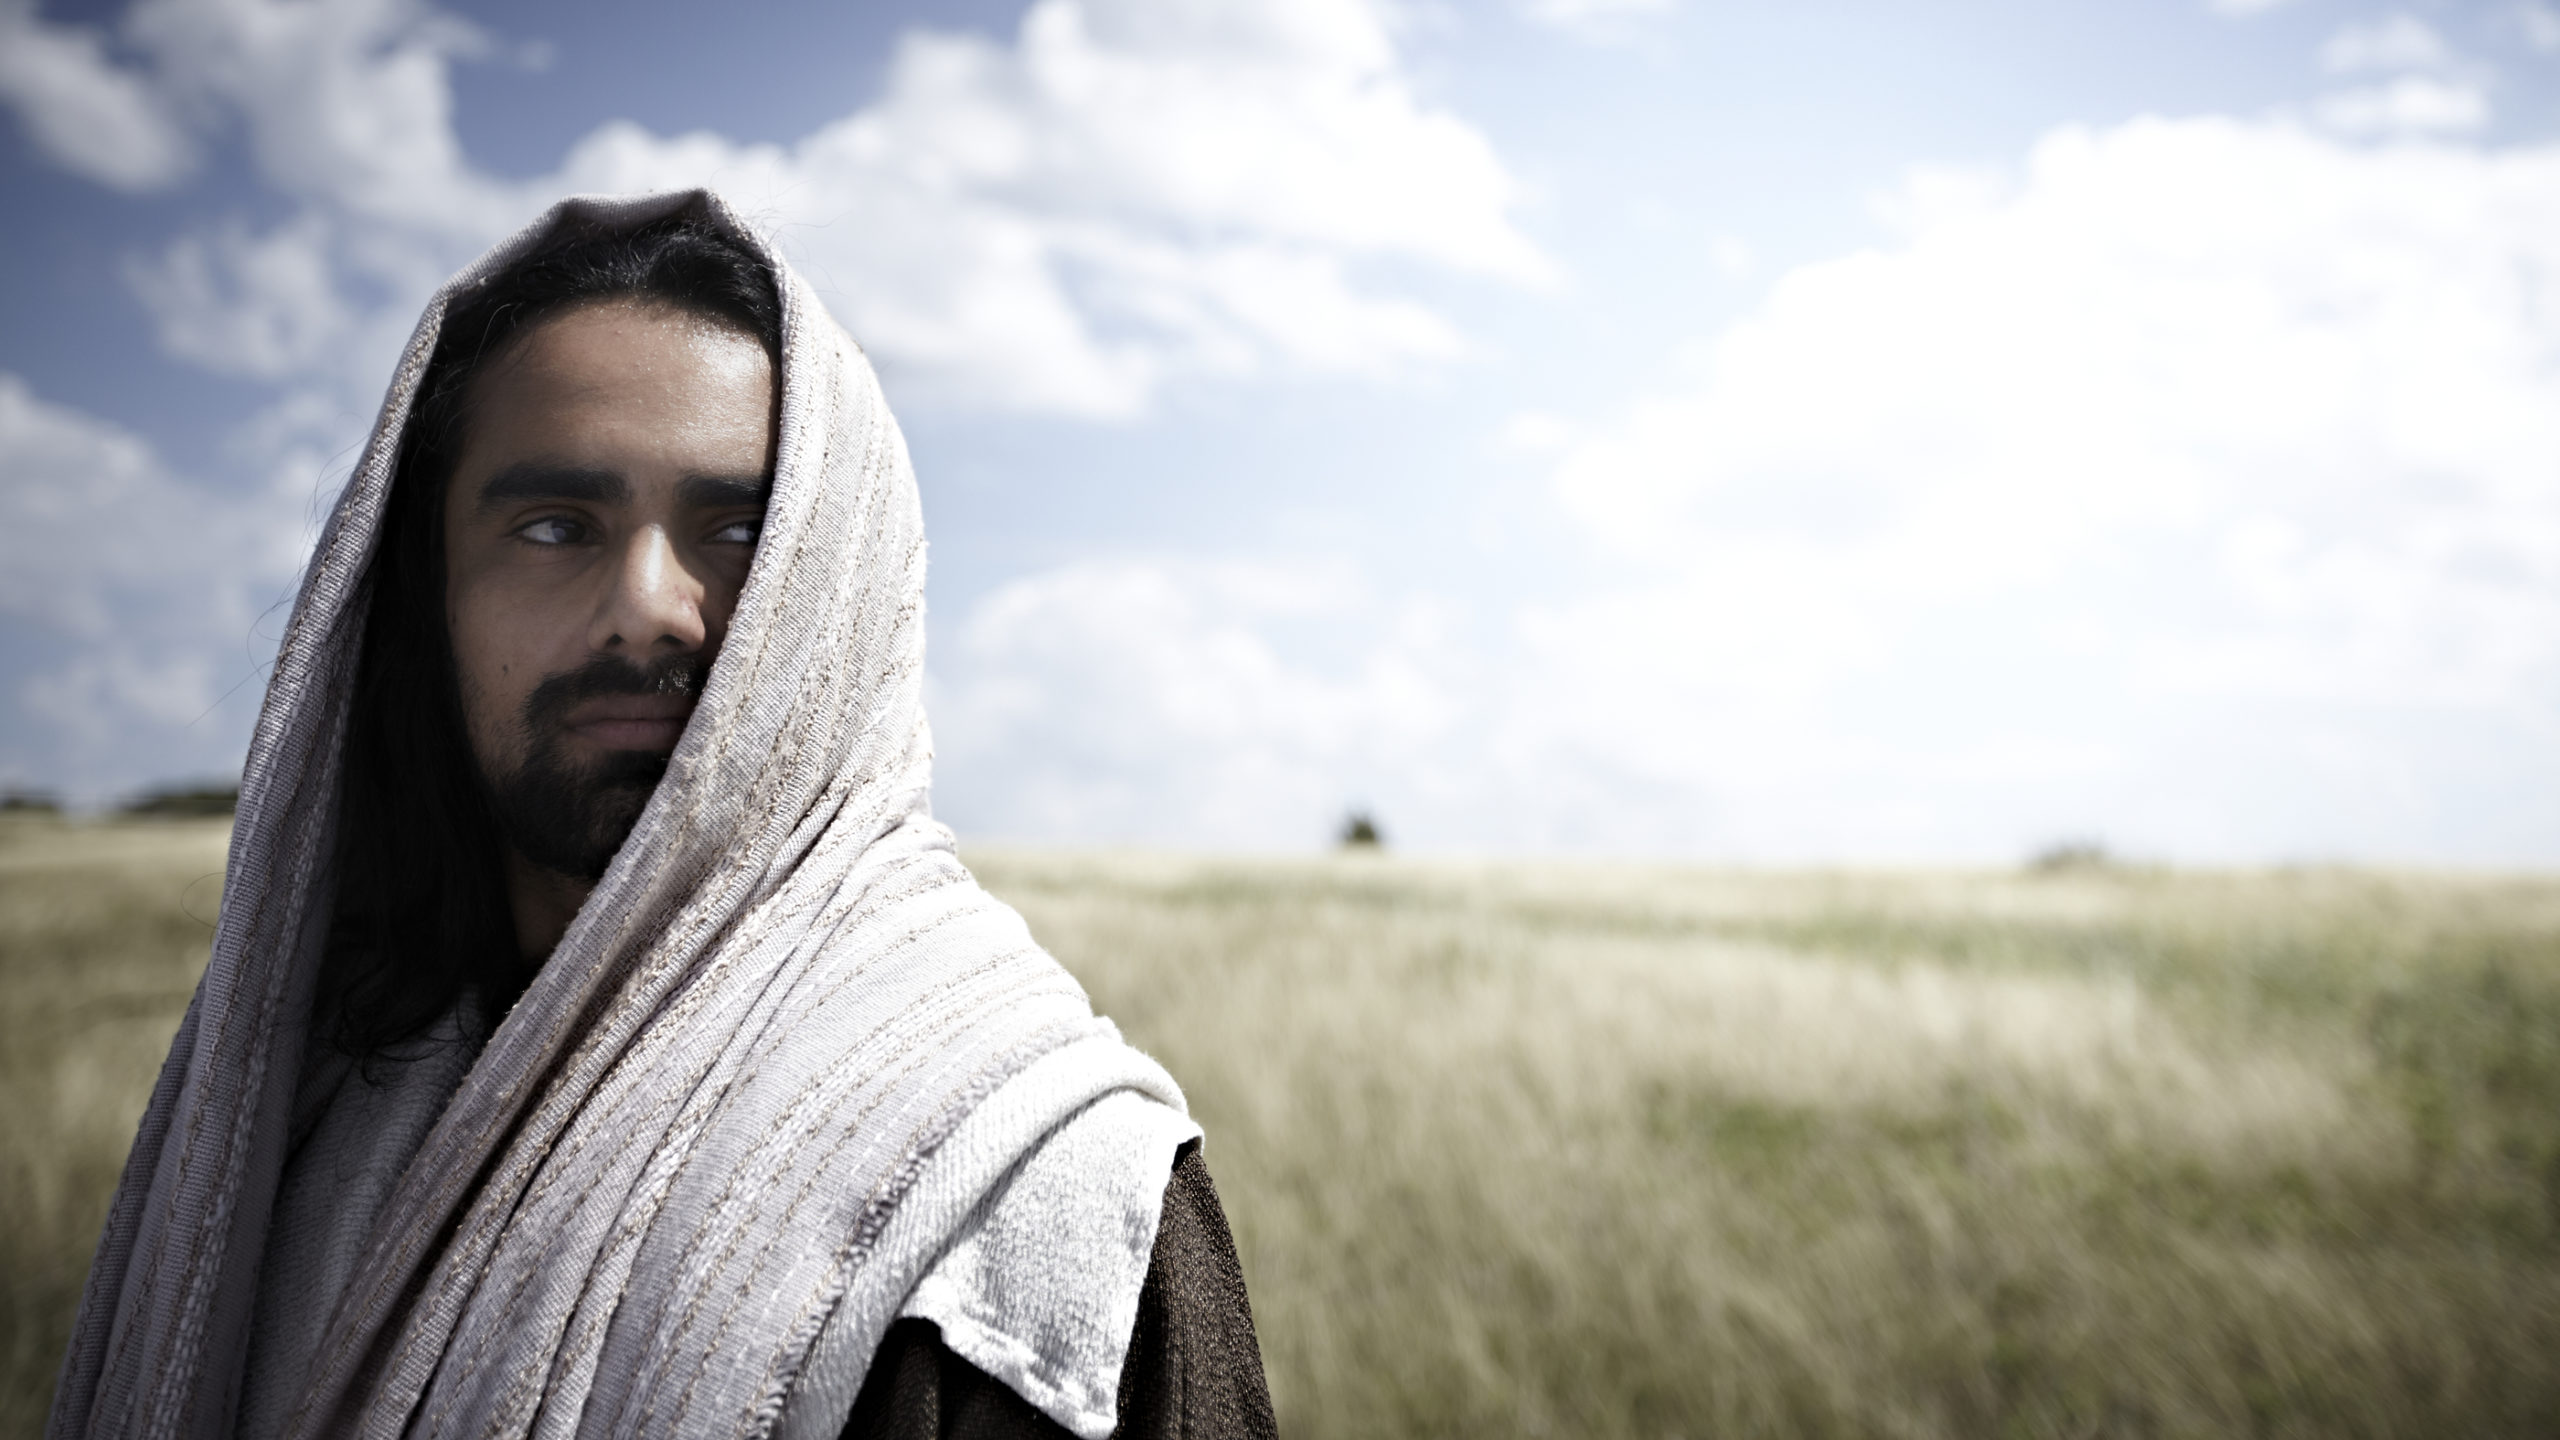 Var Jesus løgner, sinnsyk eller Gud?